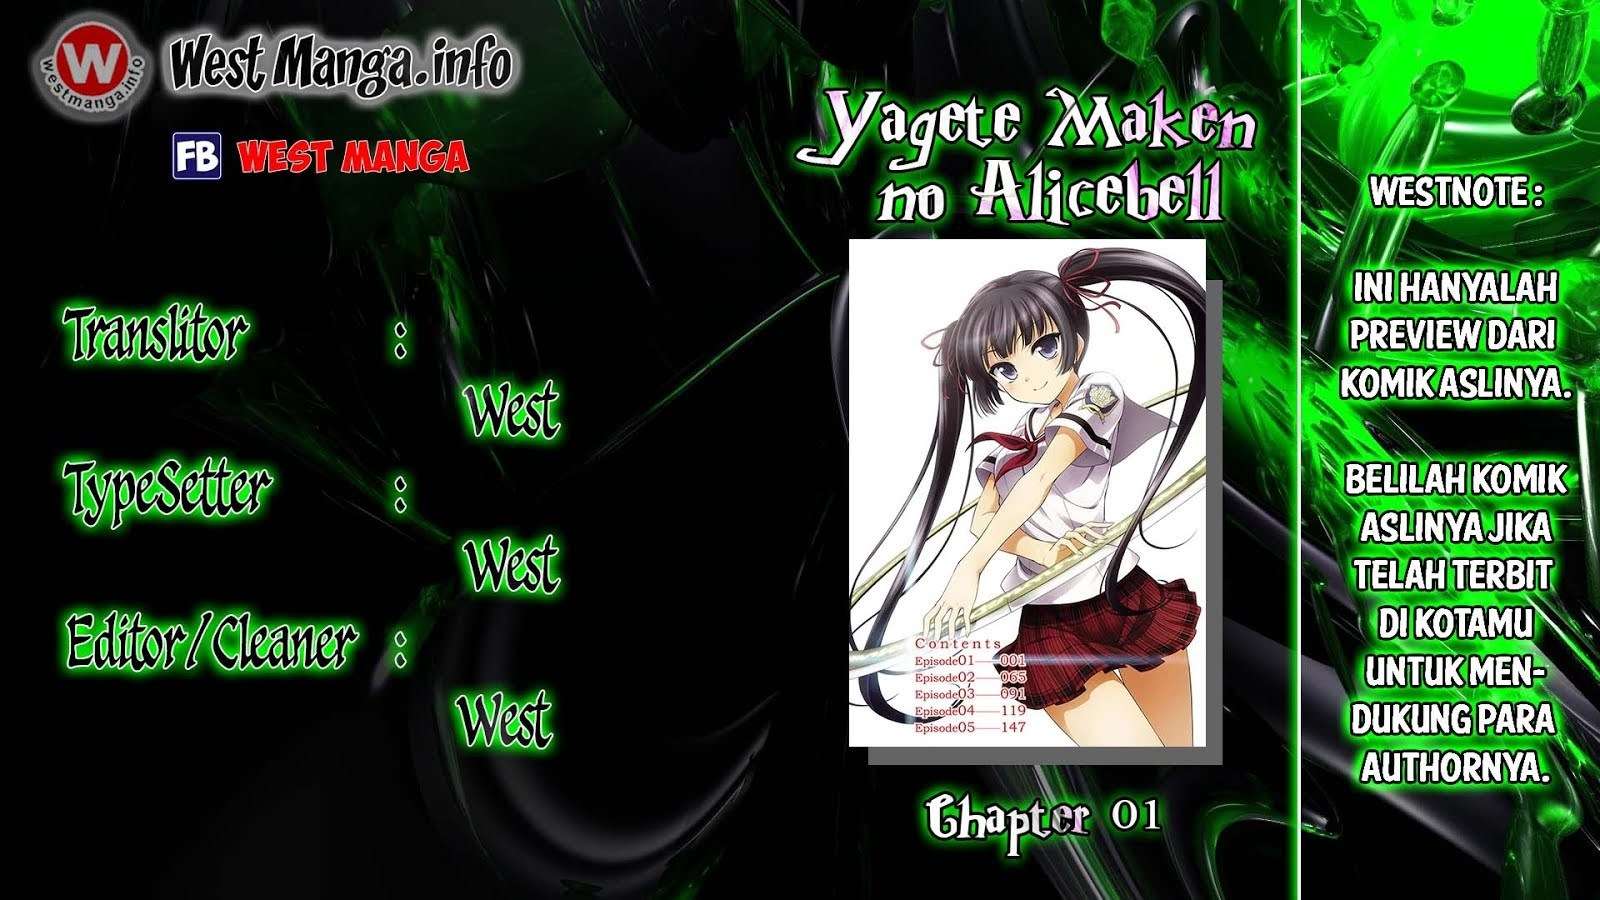 Yagate Maken no Alicebell Chapter 01